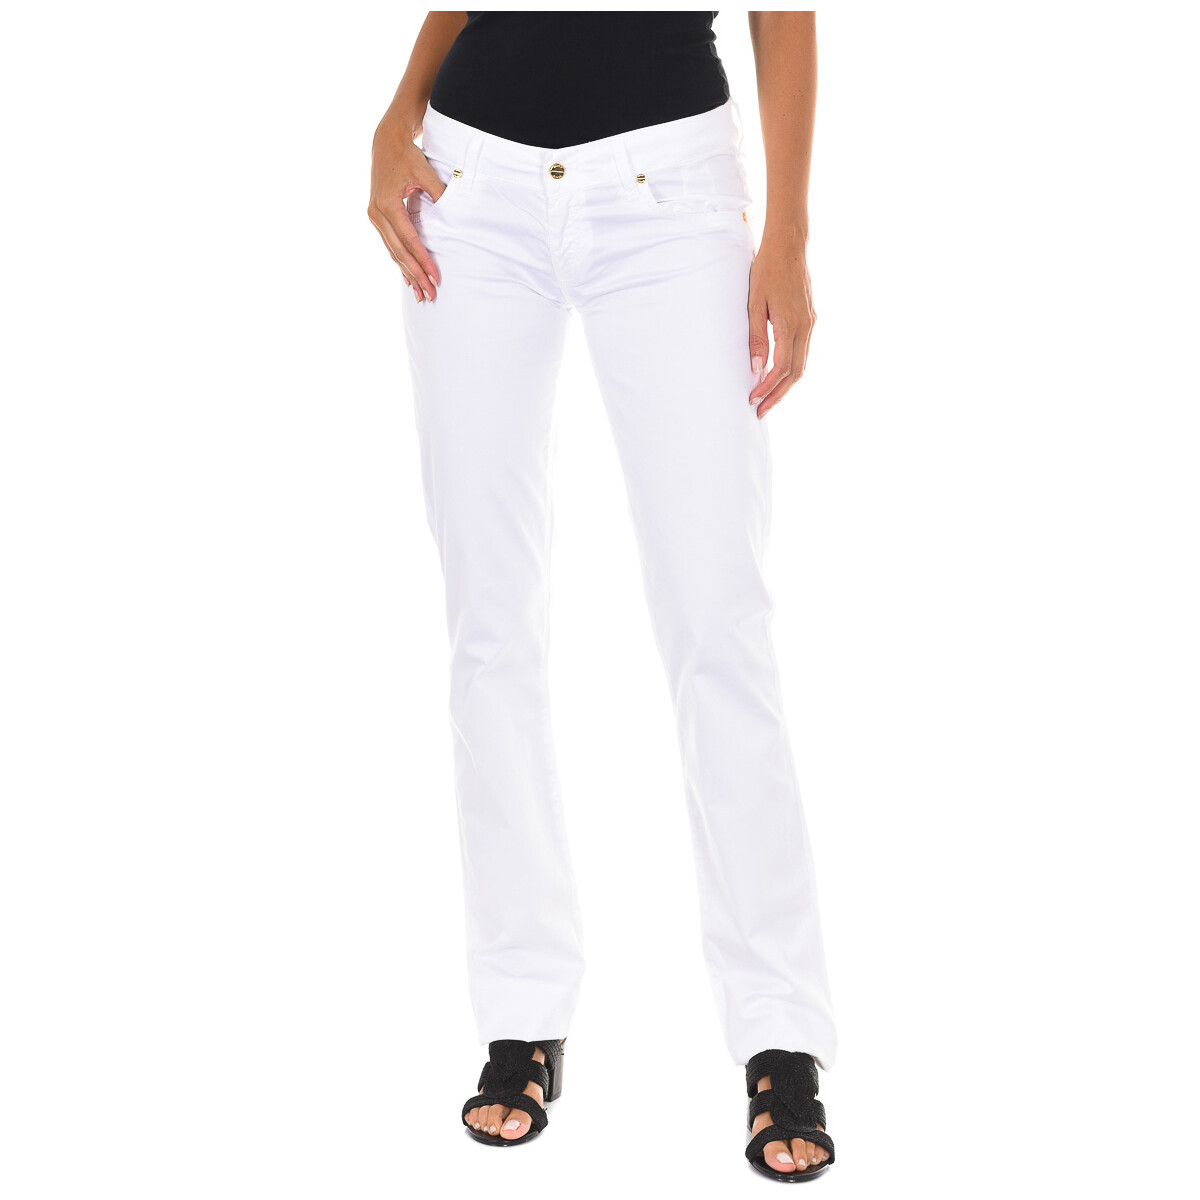 Vêtements Femme Pantalons Met C011444-P084-001 Blanc